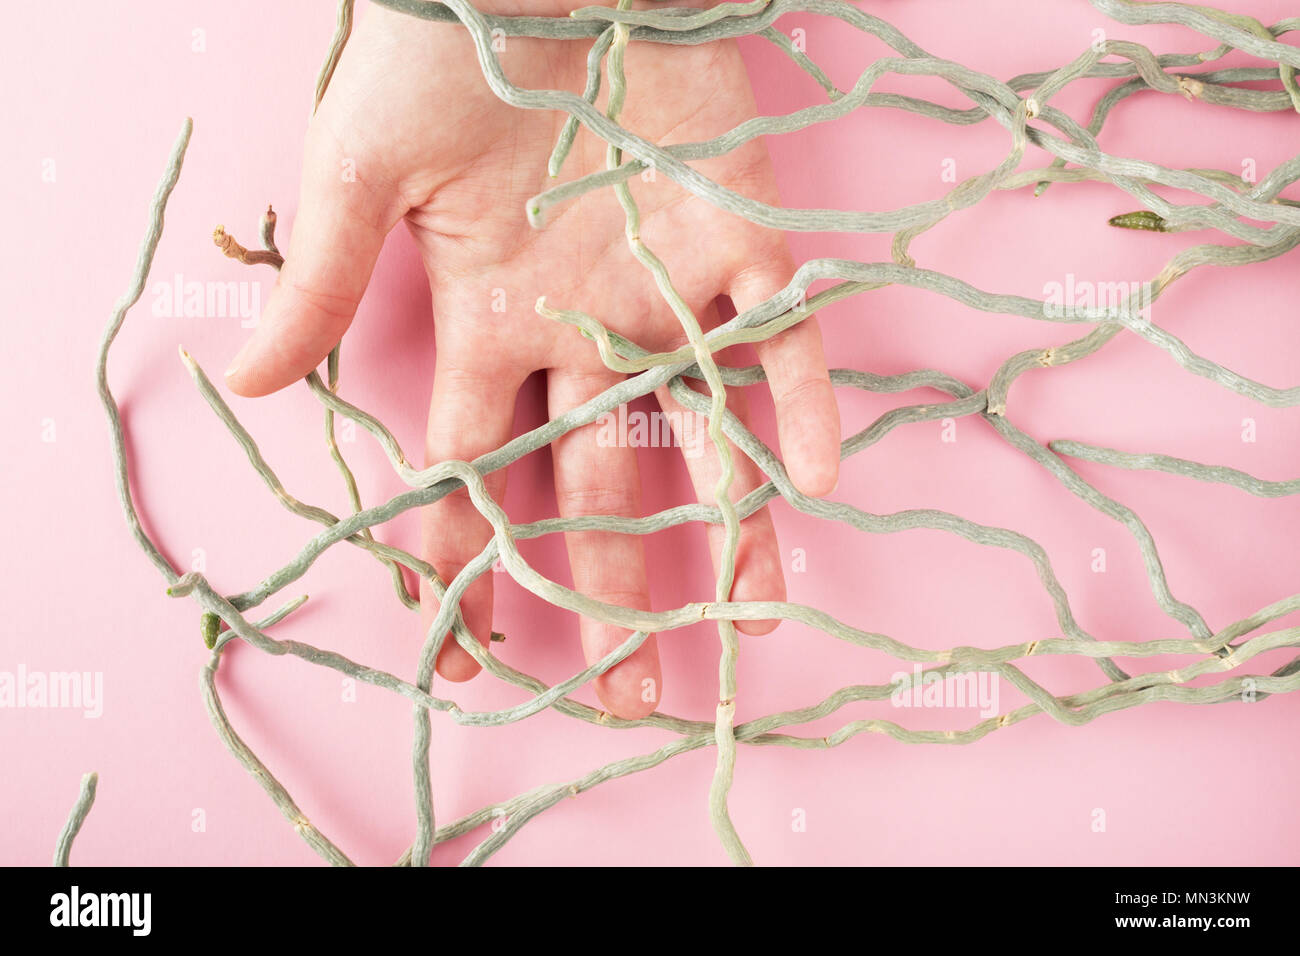 Eine weibliche Hand von orchid Wurzeln auf rosa Hintergrund verheddert. Metapher der Verbindung, Einheit von Mensch und Natur. Stockfoto